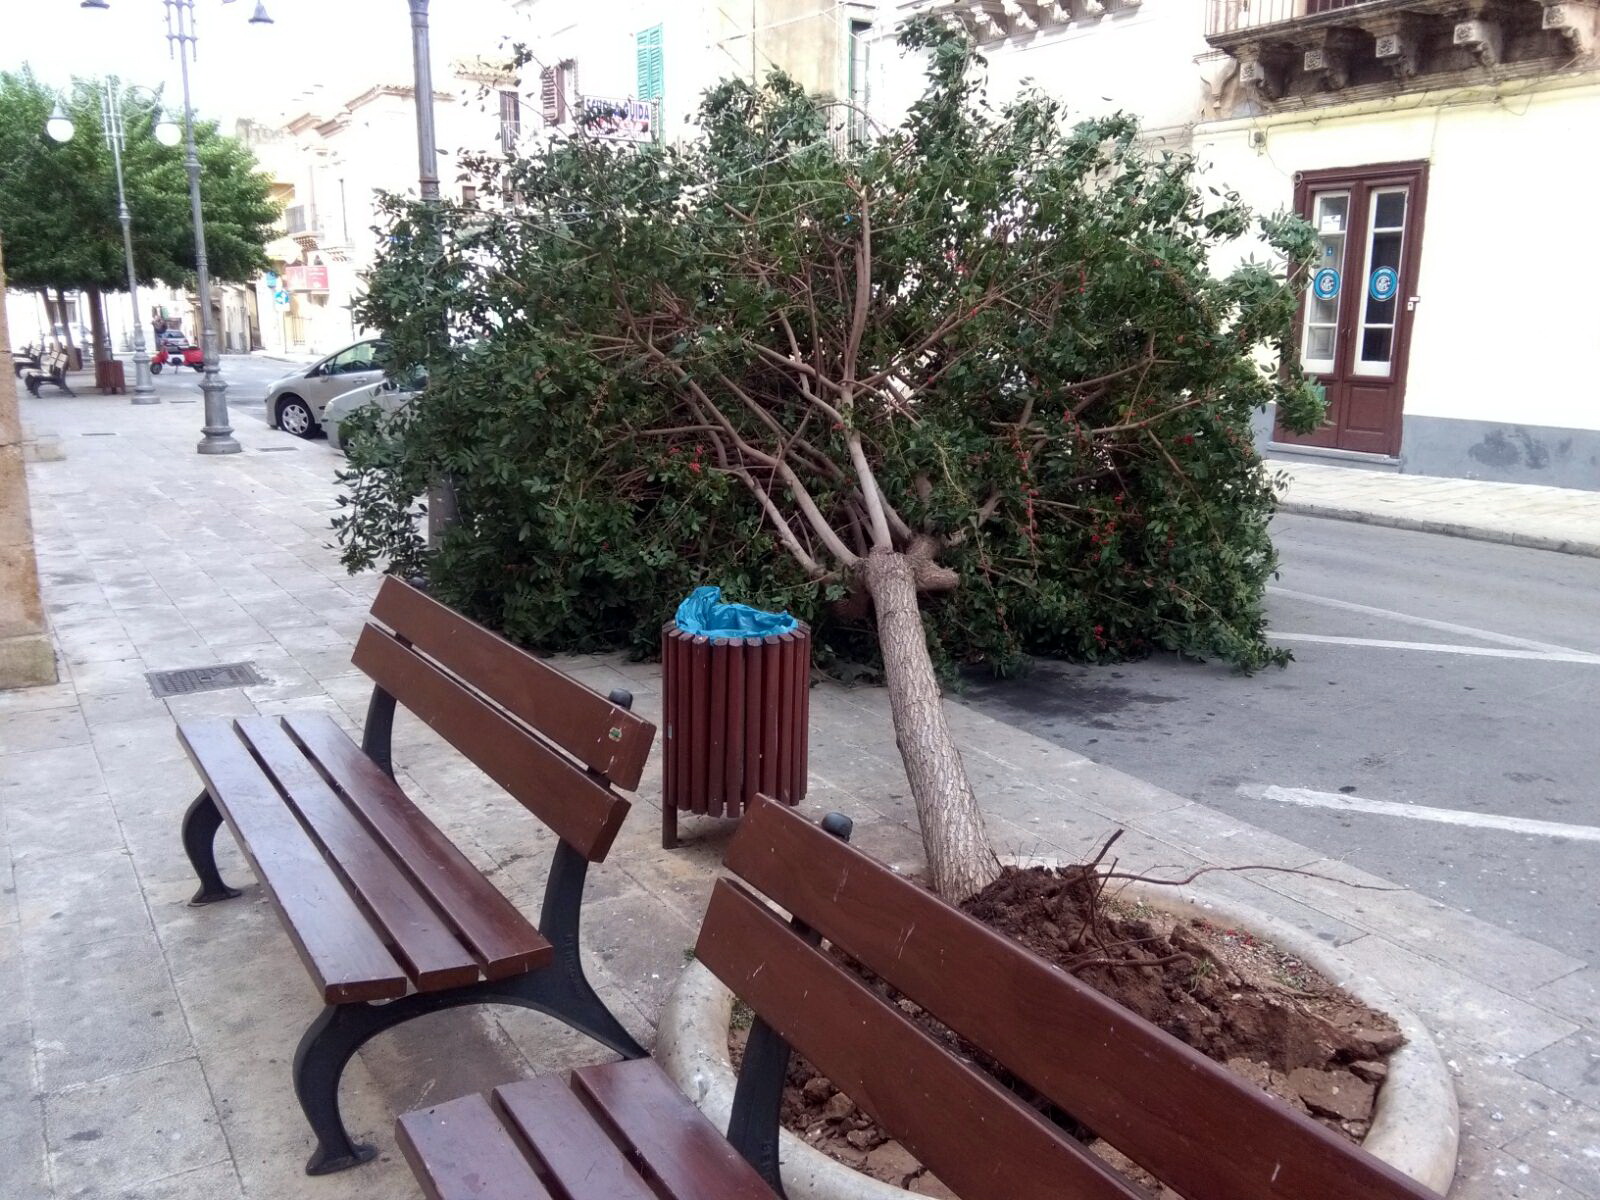  Il vento sradica un albero in piazza Vittorio Emanuele: zona chiusa al traffico